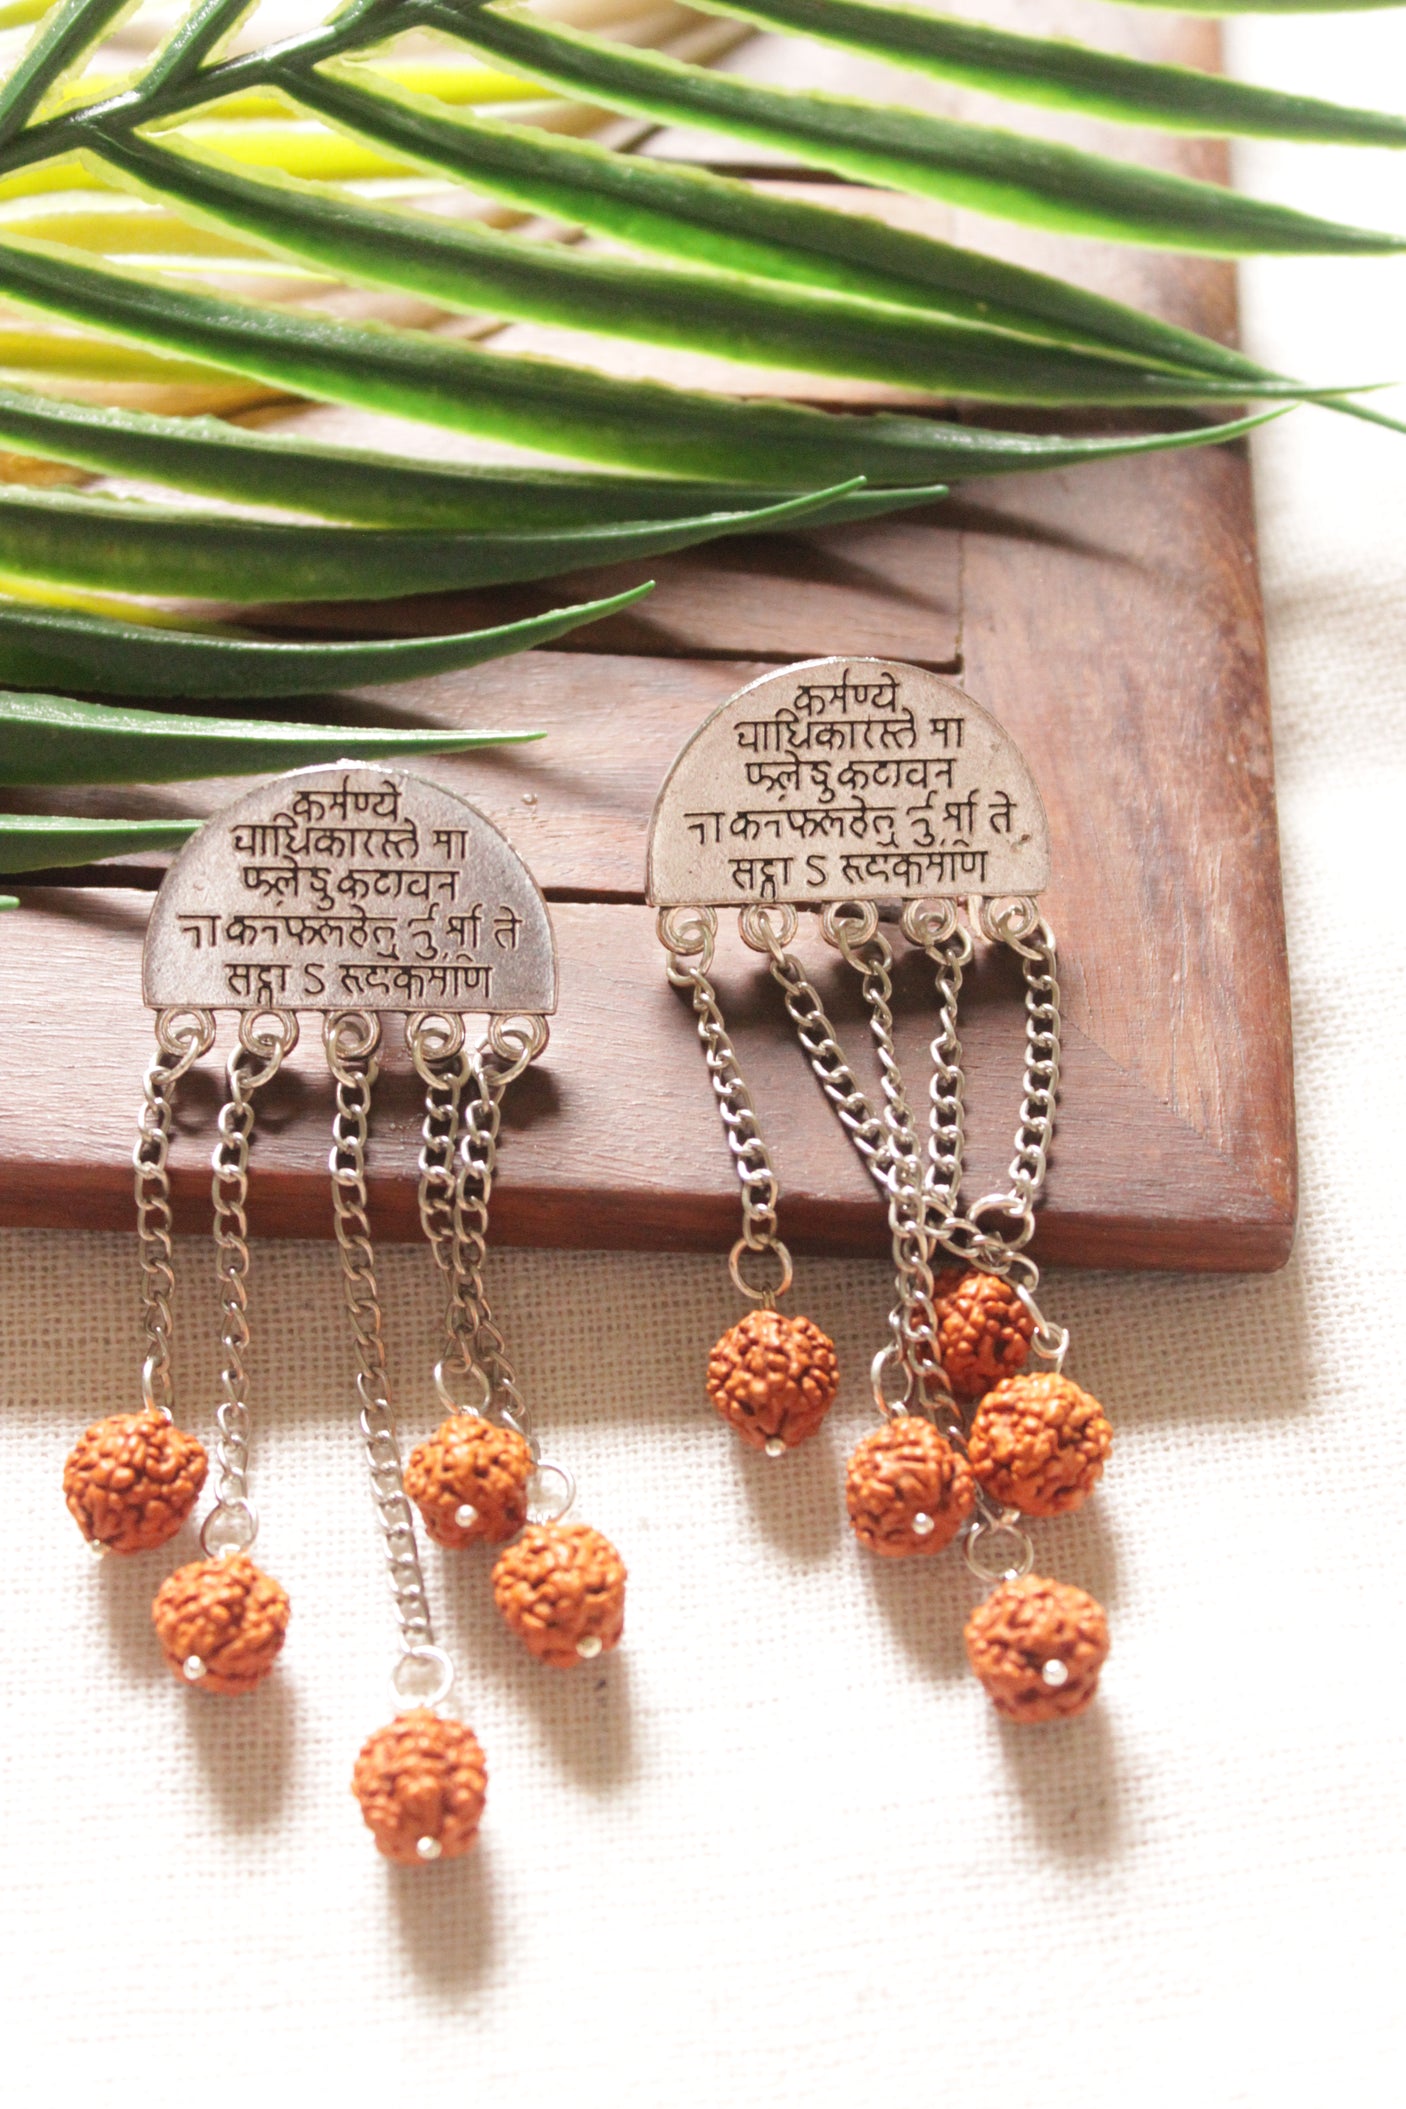 Mantra Printed Metal Earrings with Rudraksha Chain Strings